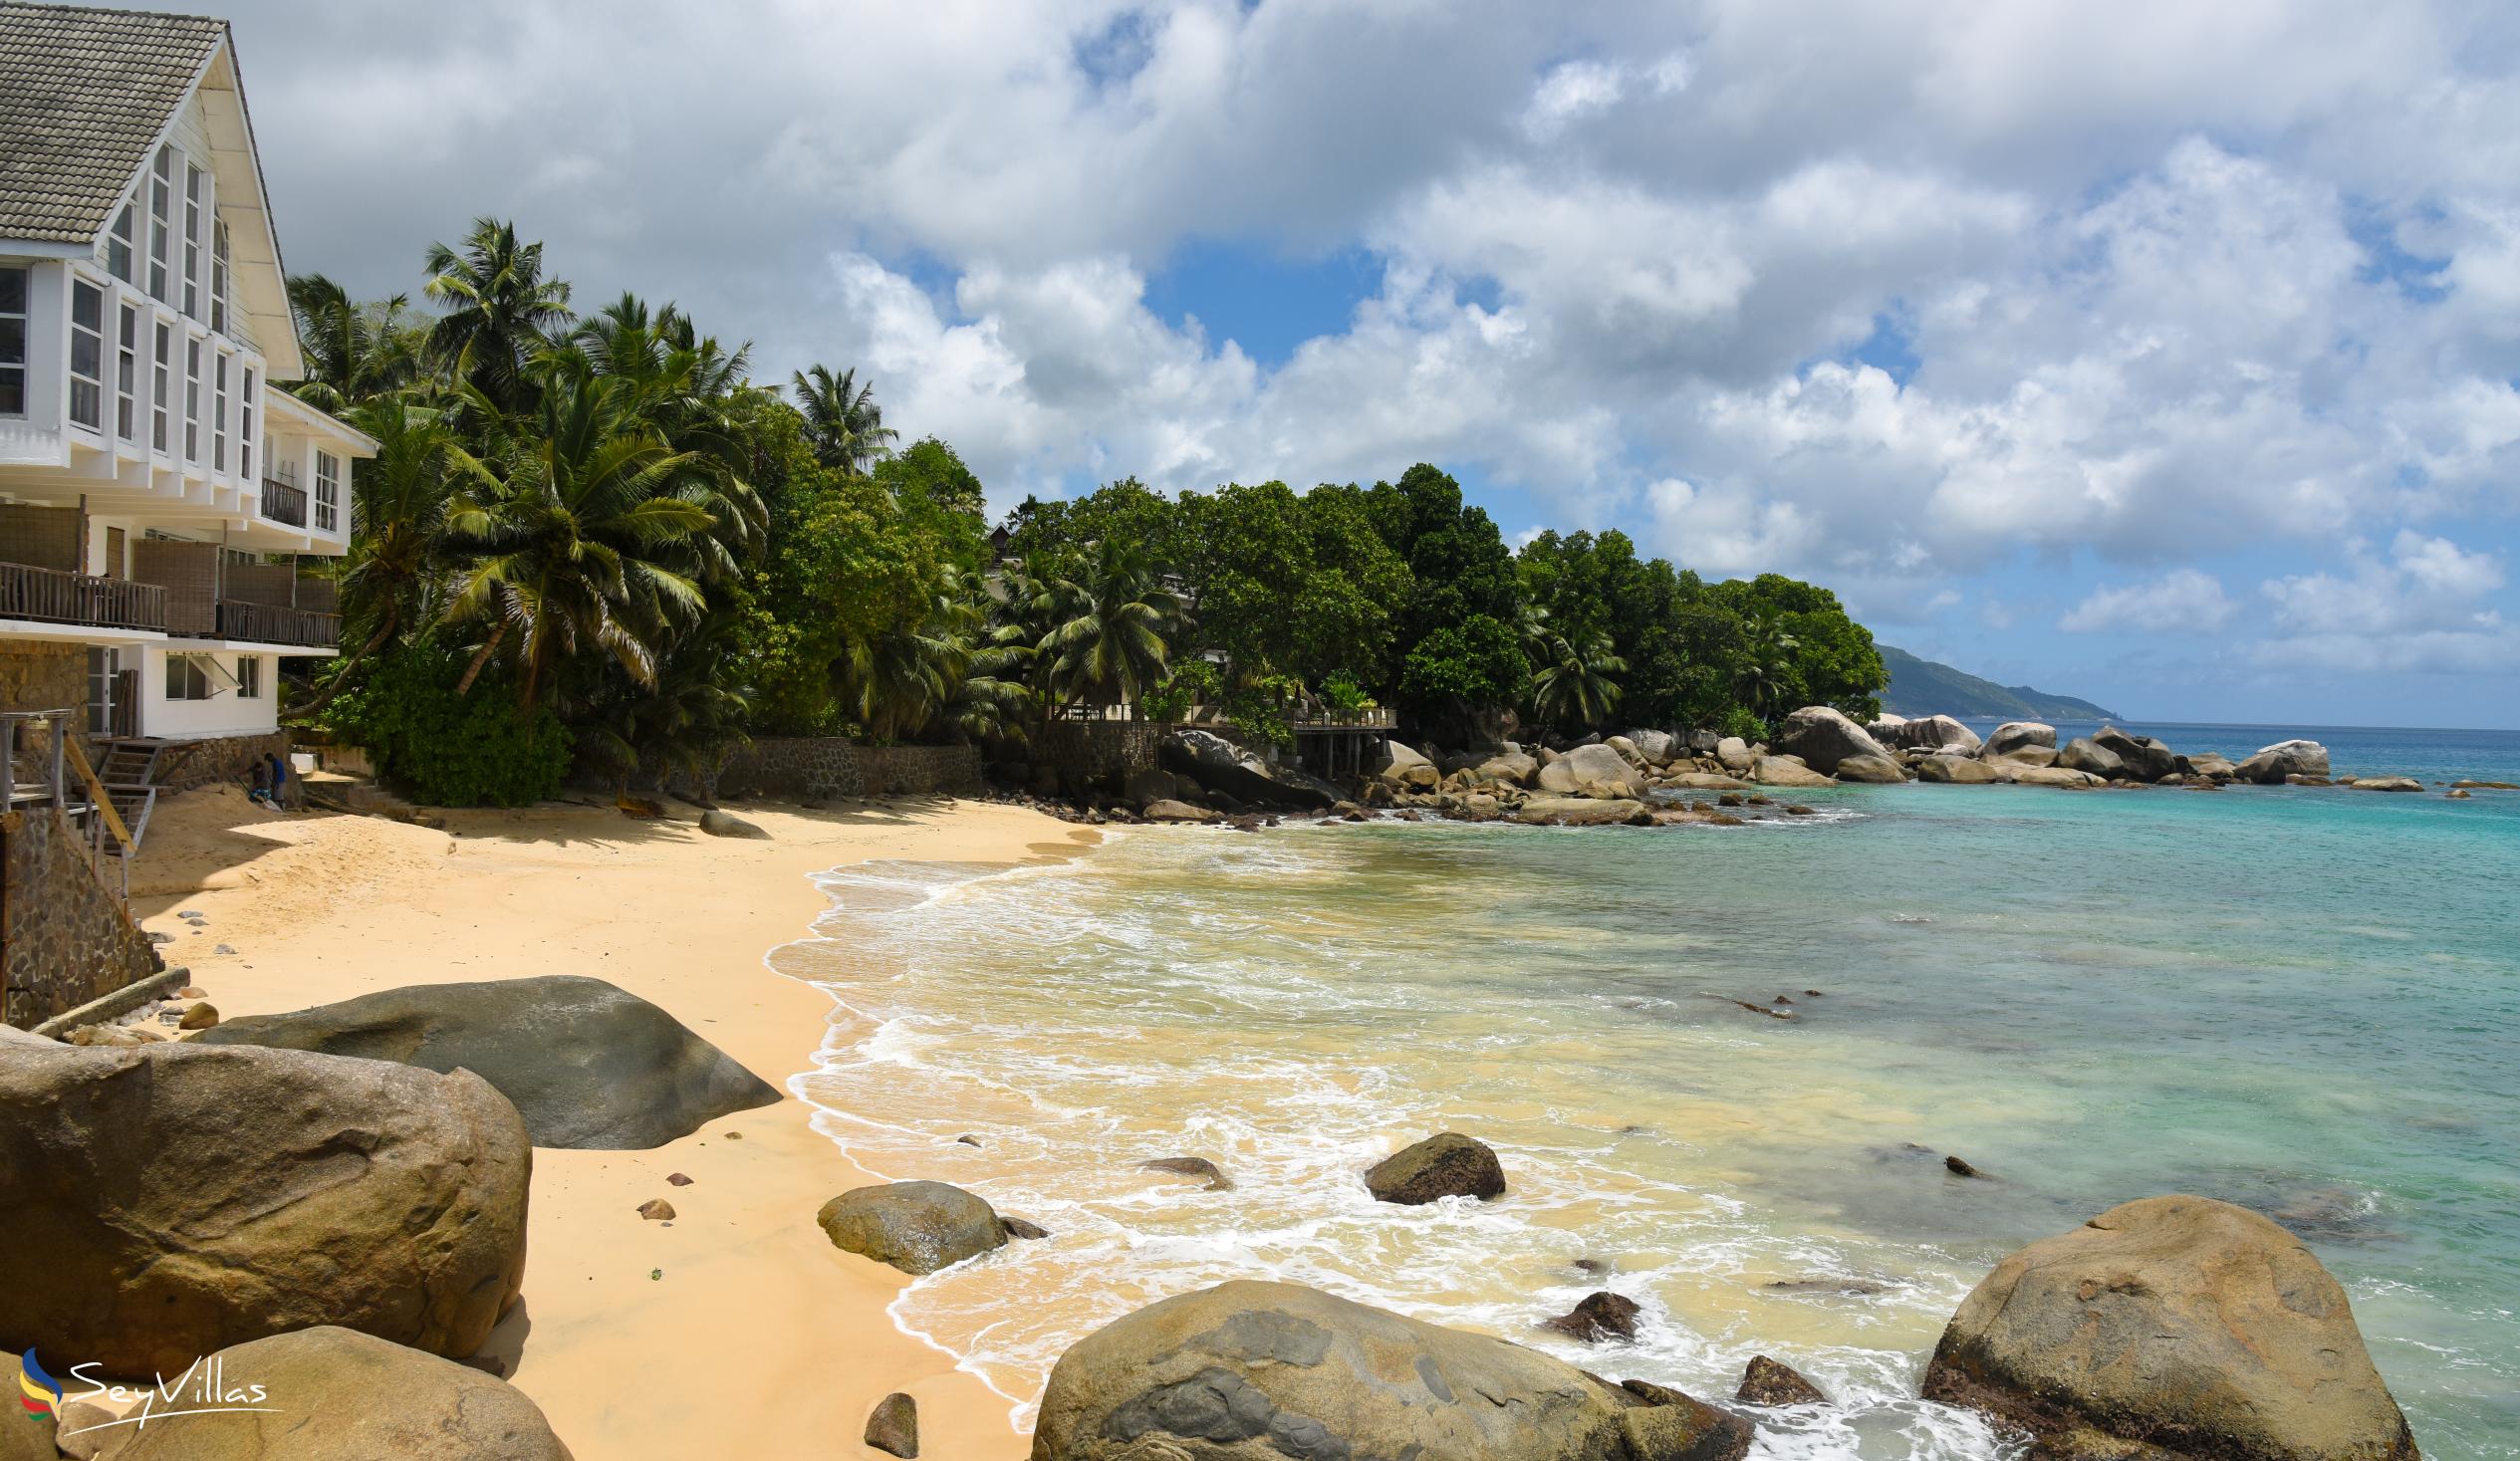 Photo 6: Glacis Beach - Mahé (Seychelles)